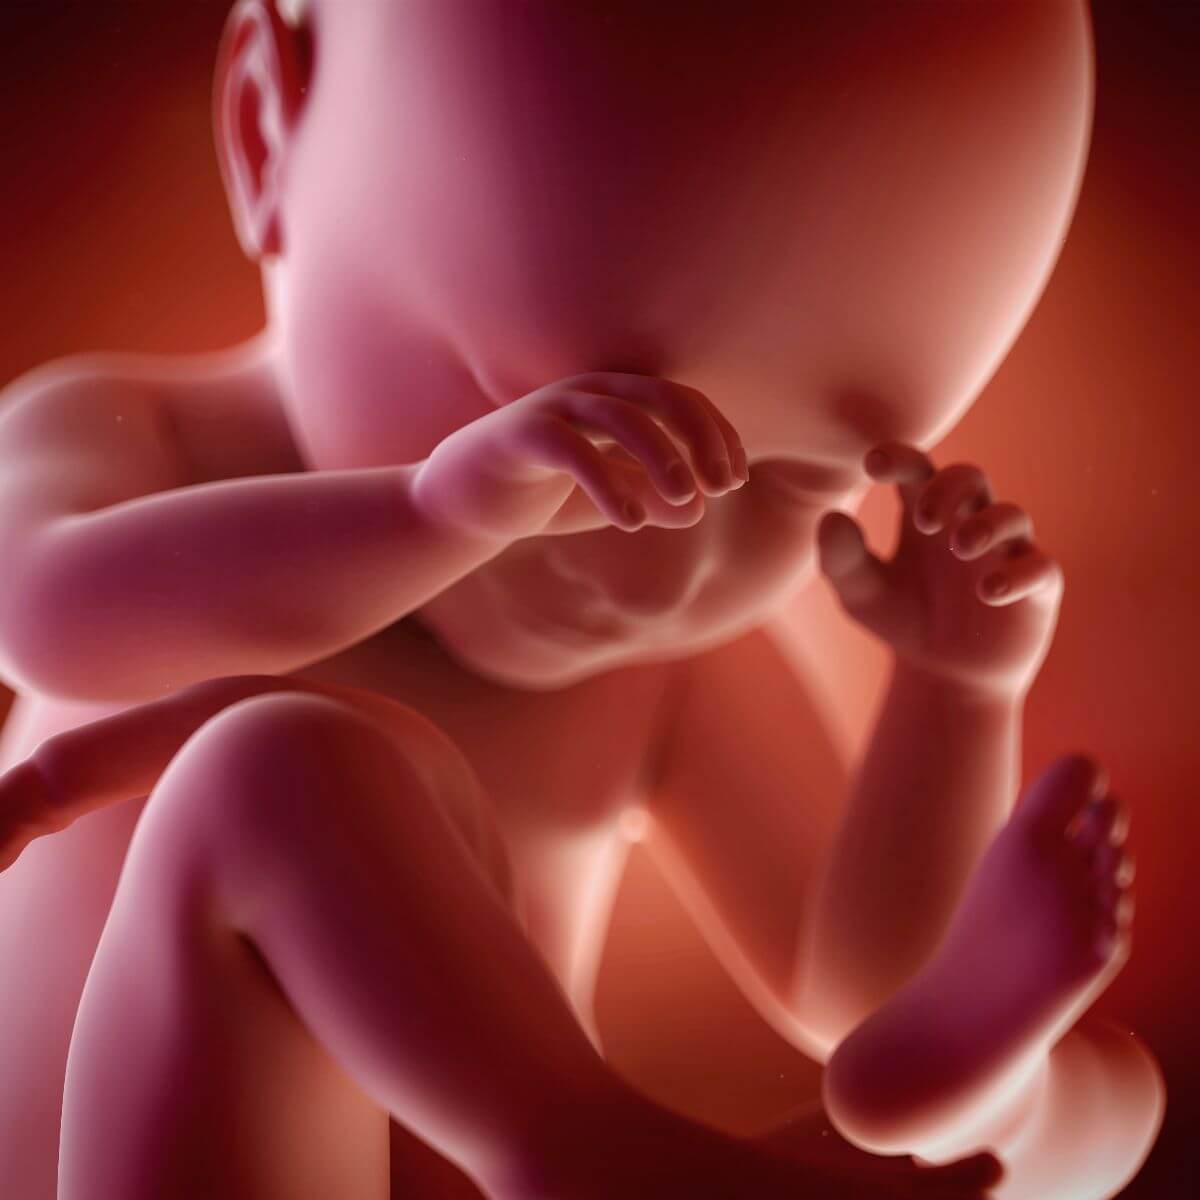 Während der Schwangerschaft - Baby im Uterus